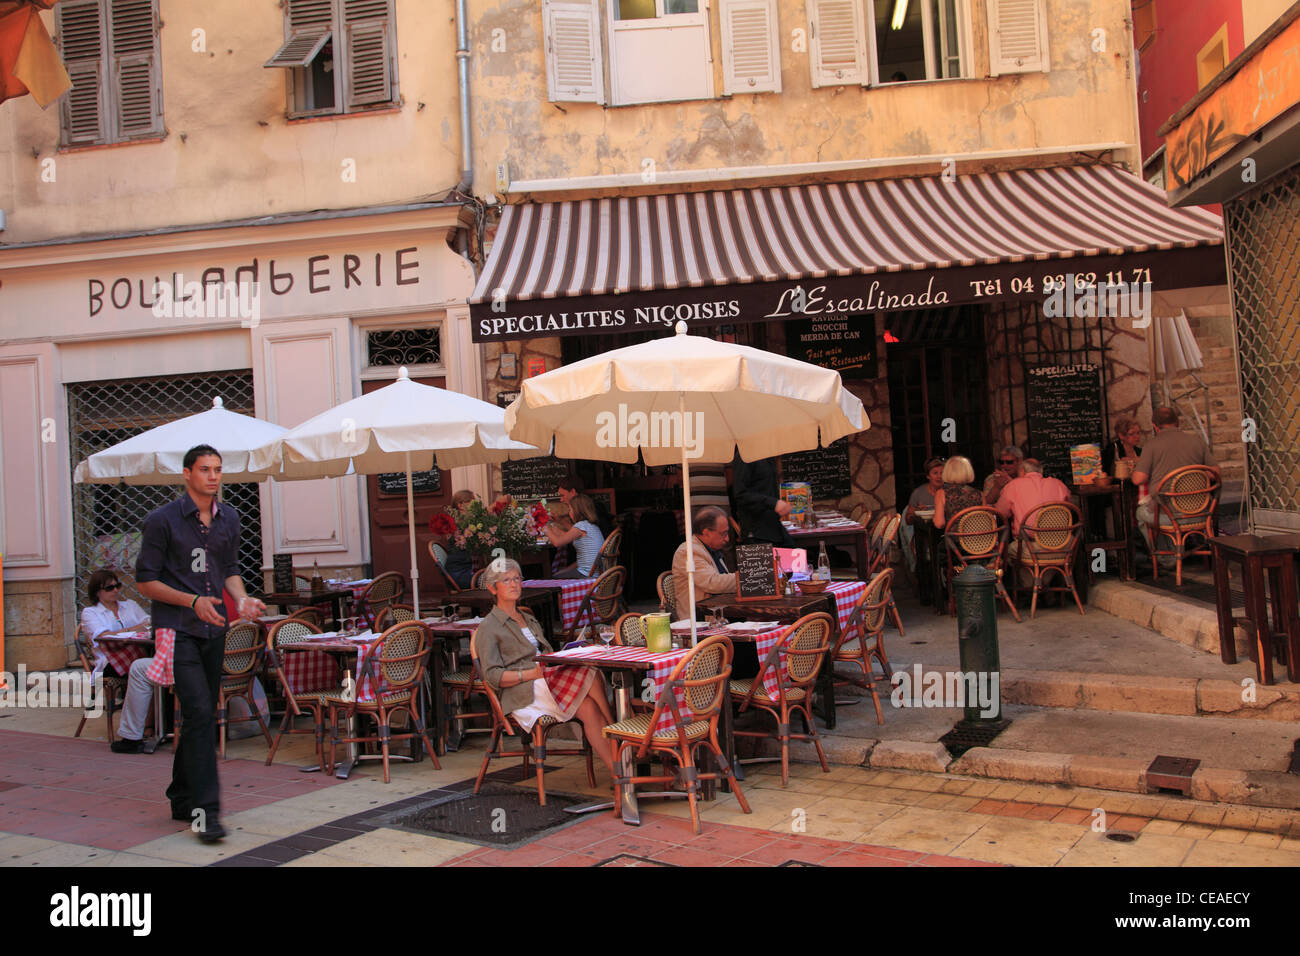 Cafe, Vieille Ville, Vieux Nice, Nice, Côte d'Azur, Alpes Maritimes, Provence, Cote d Azur, France, Europe Banque D'Images